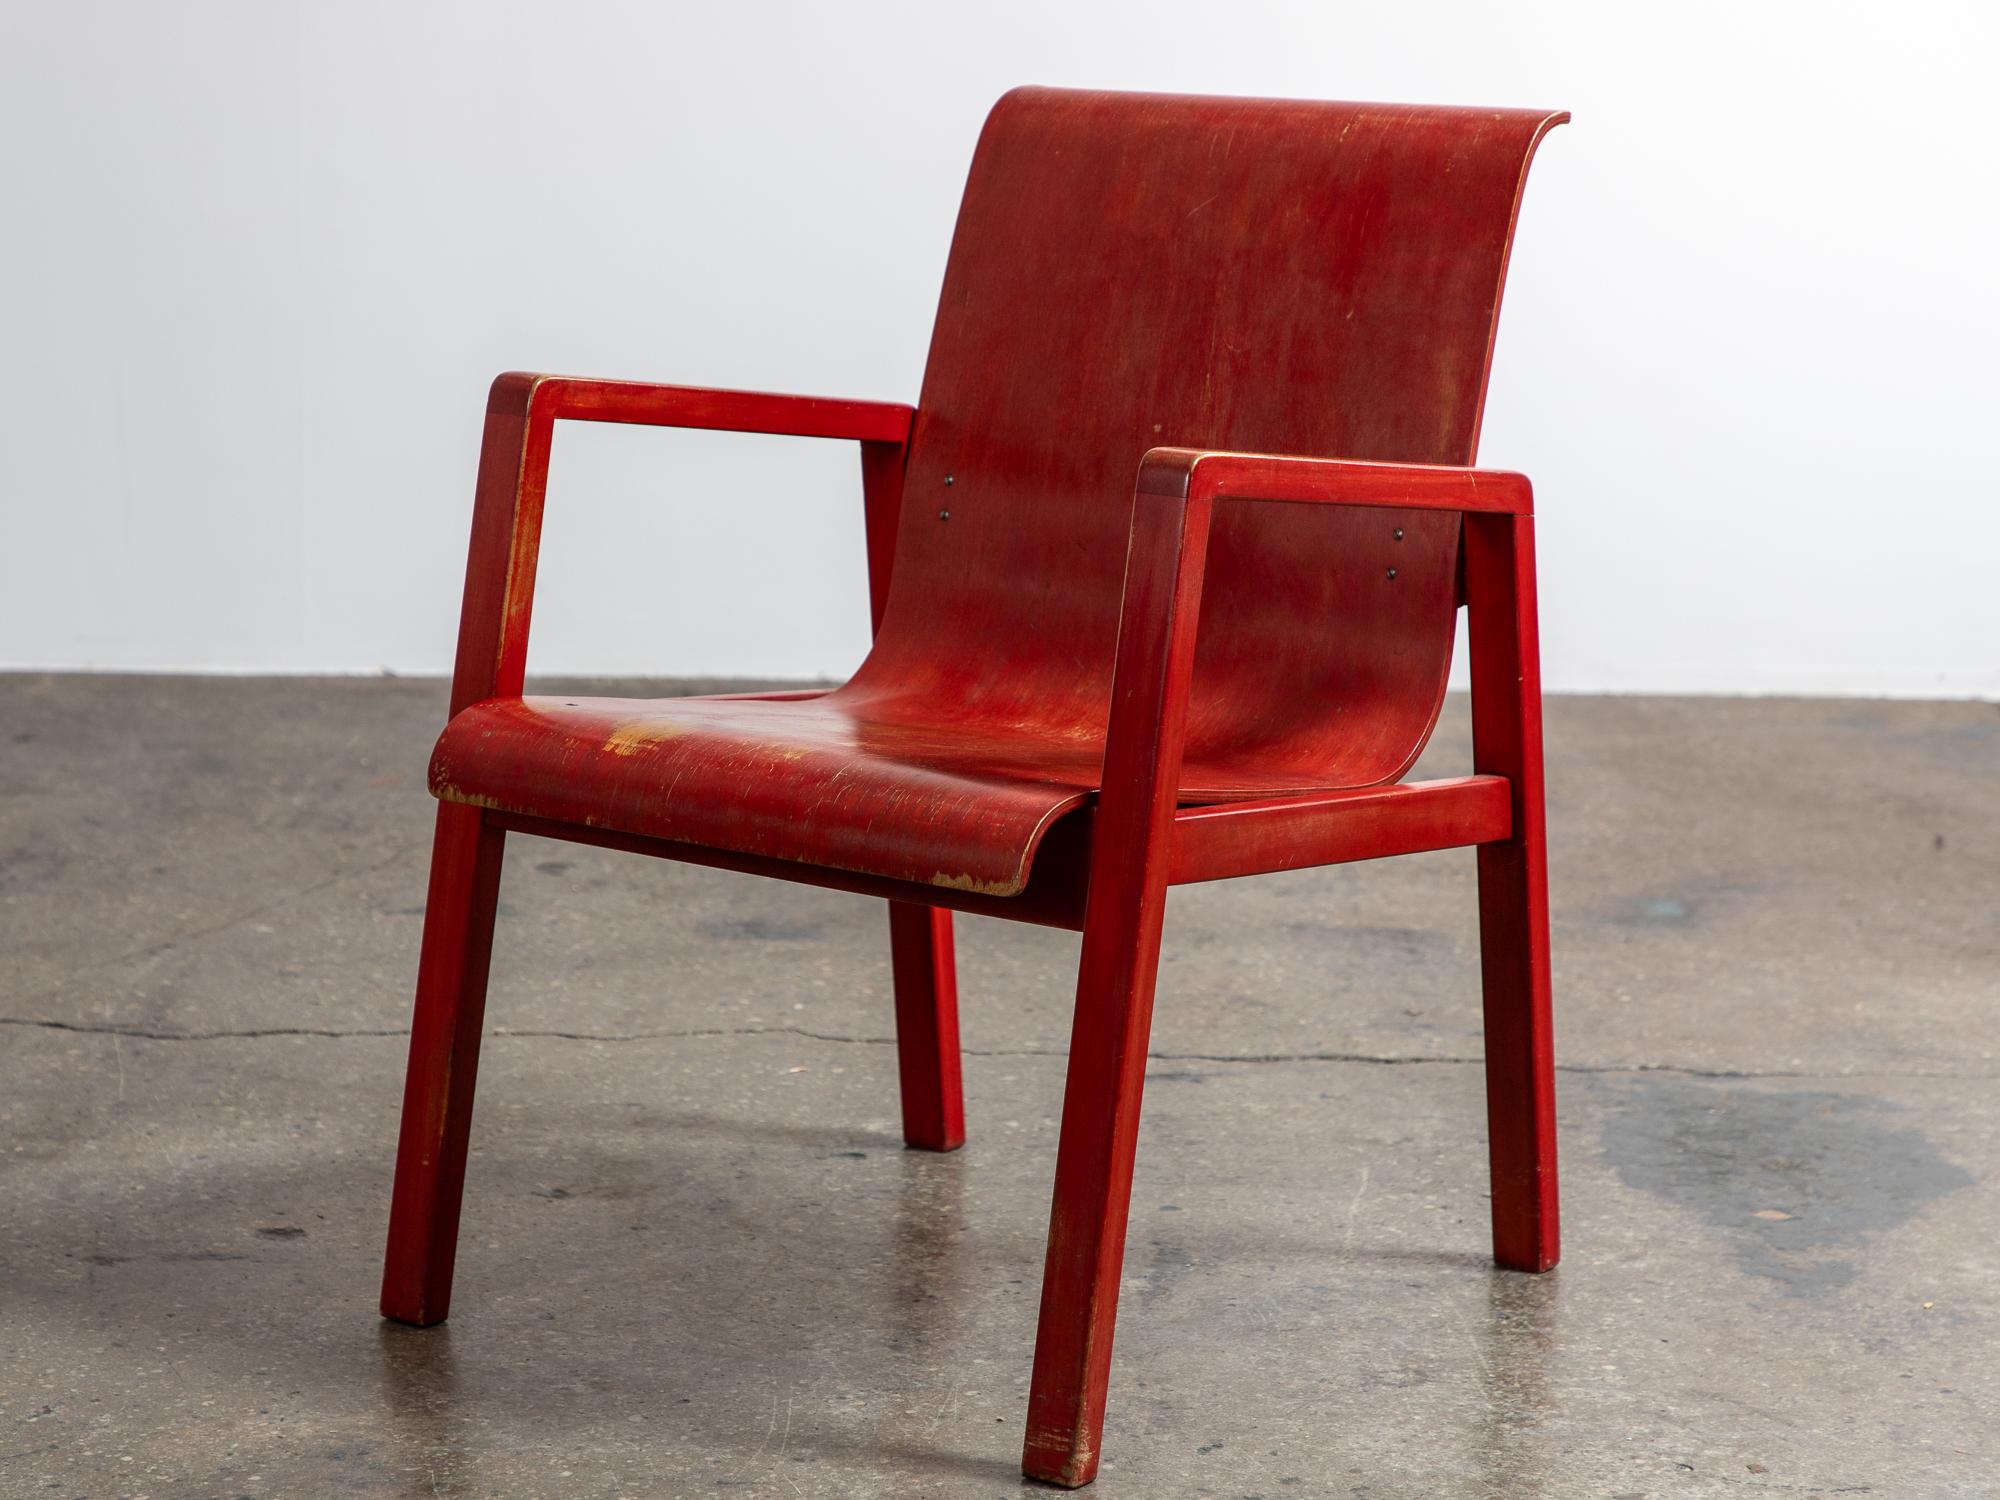 Remarquable chaise de couloir modèle 403 en laque rouge, conçue par Alvar Aalto pour le sanatorium de Paimio, plus tard éditée par Finmar. Le fauteuil présente un design fluide, avec une assise et un dossier en contreplaqué gracieusement incurvés,